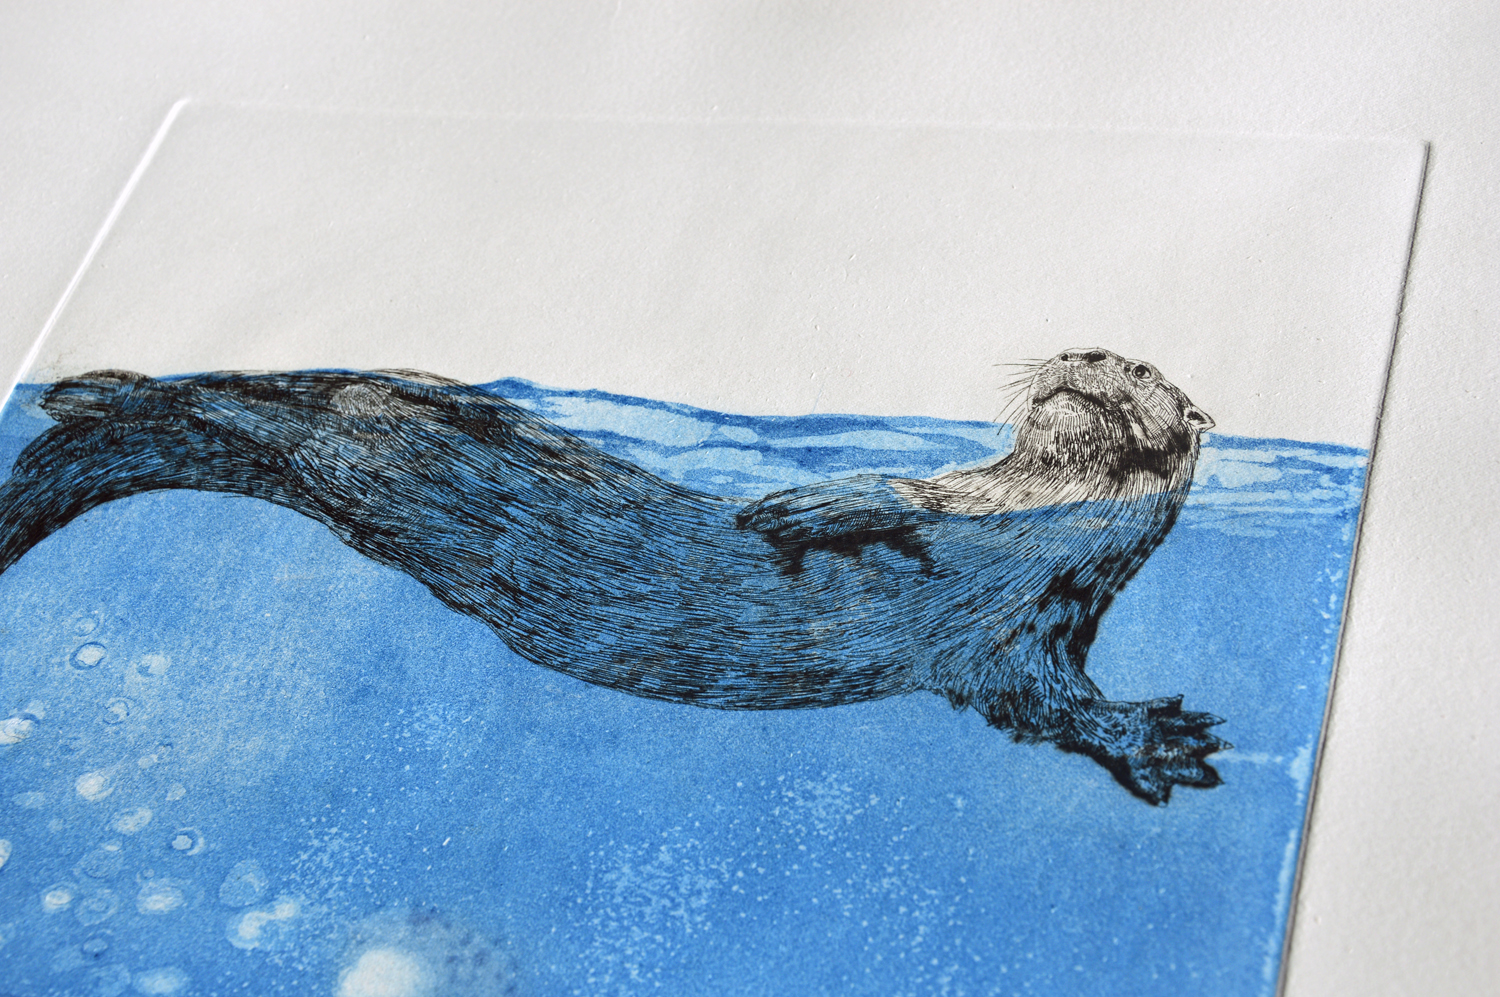 Otter Art, engraving on paper